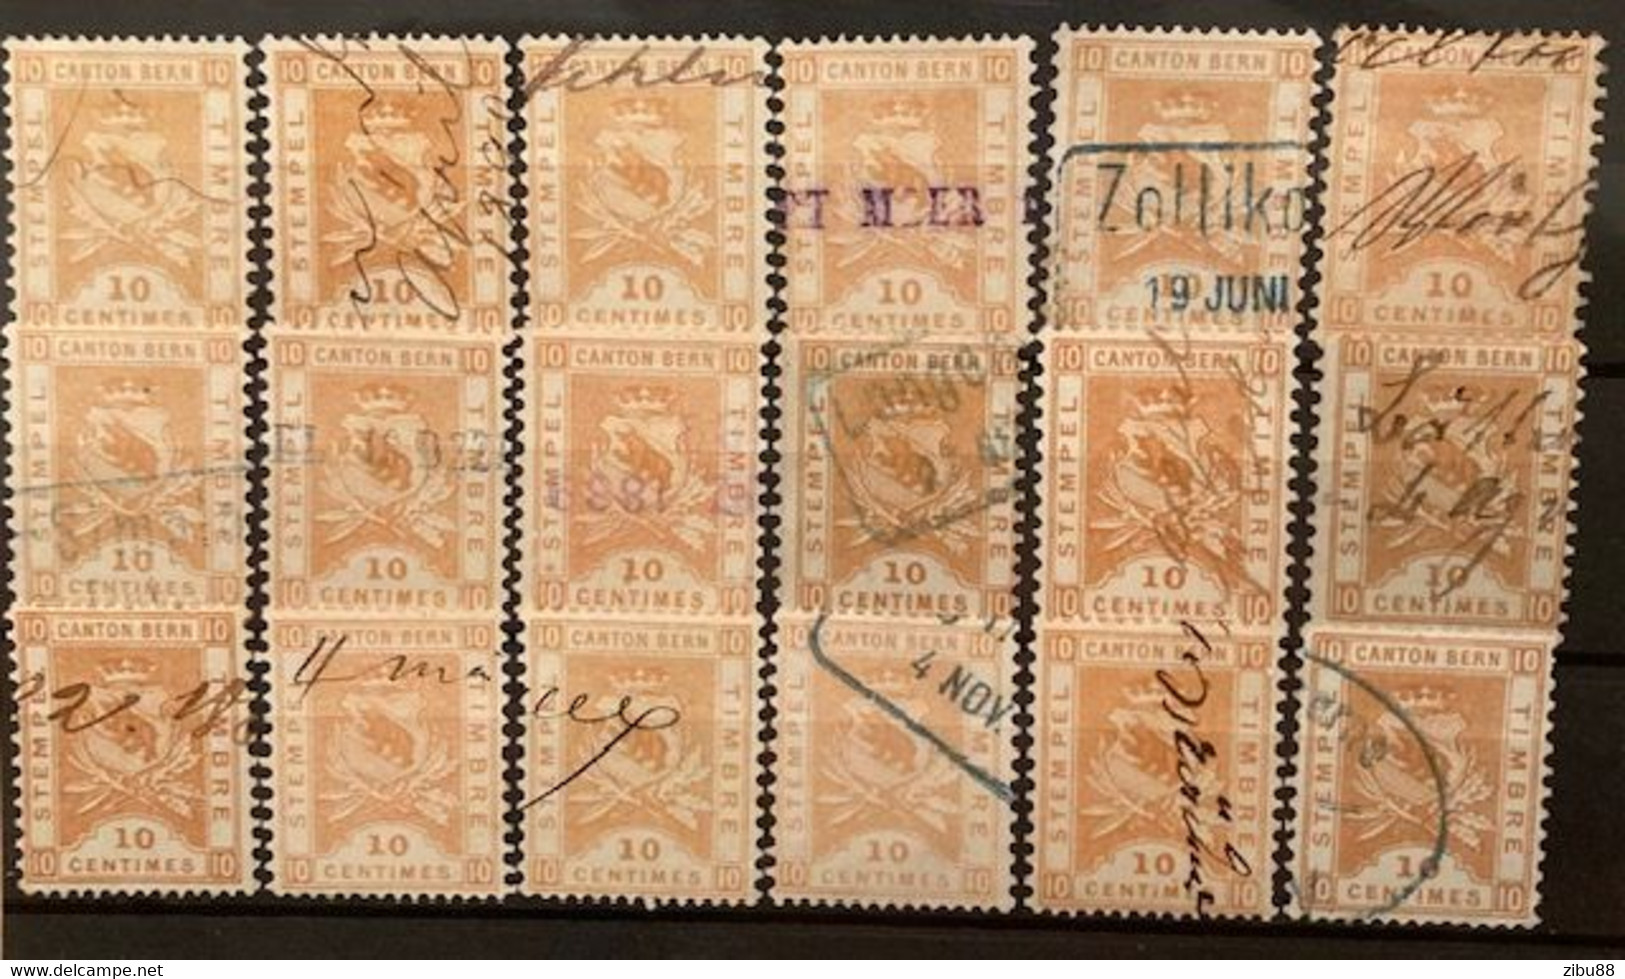 Fiskalmarken / Revenue Stamp Switzerland - Kanton Bern Steckkarte Stempelmarken 10 Centimes - Steuermarken